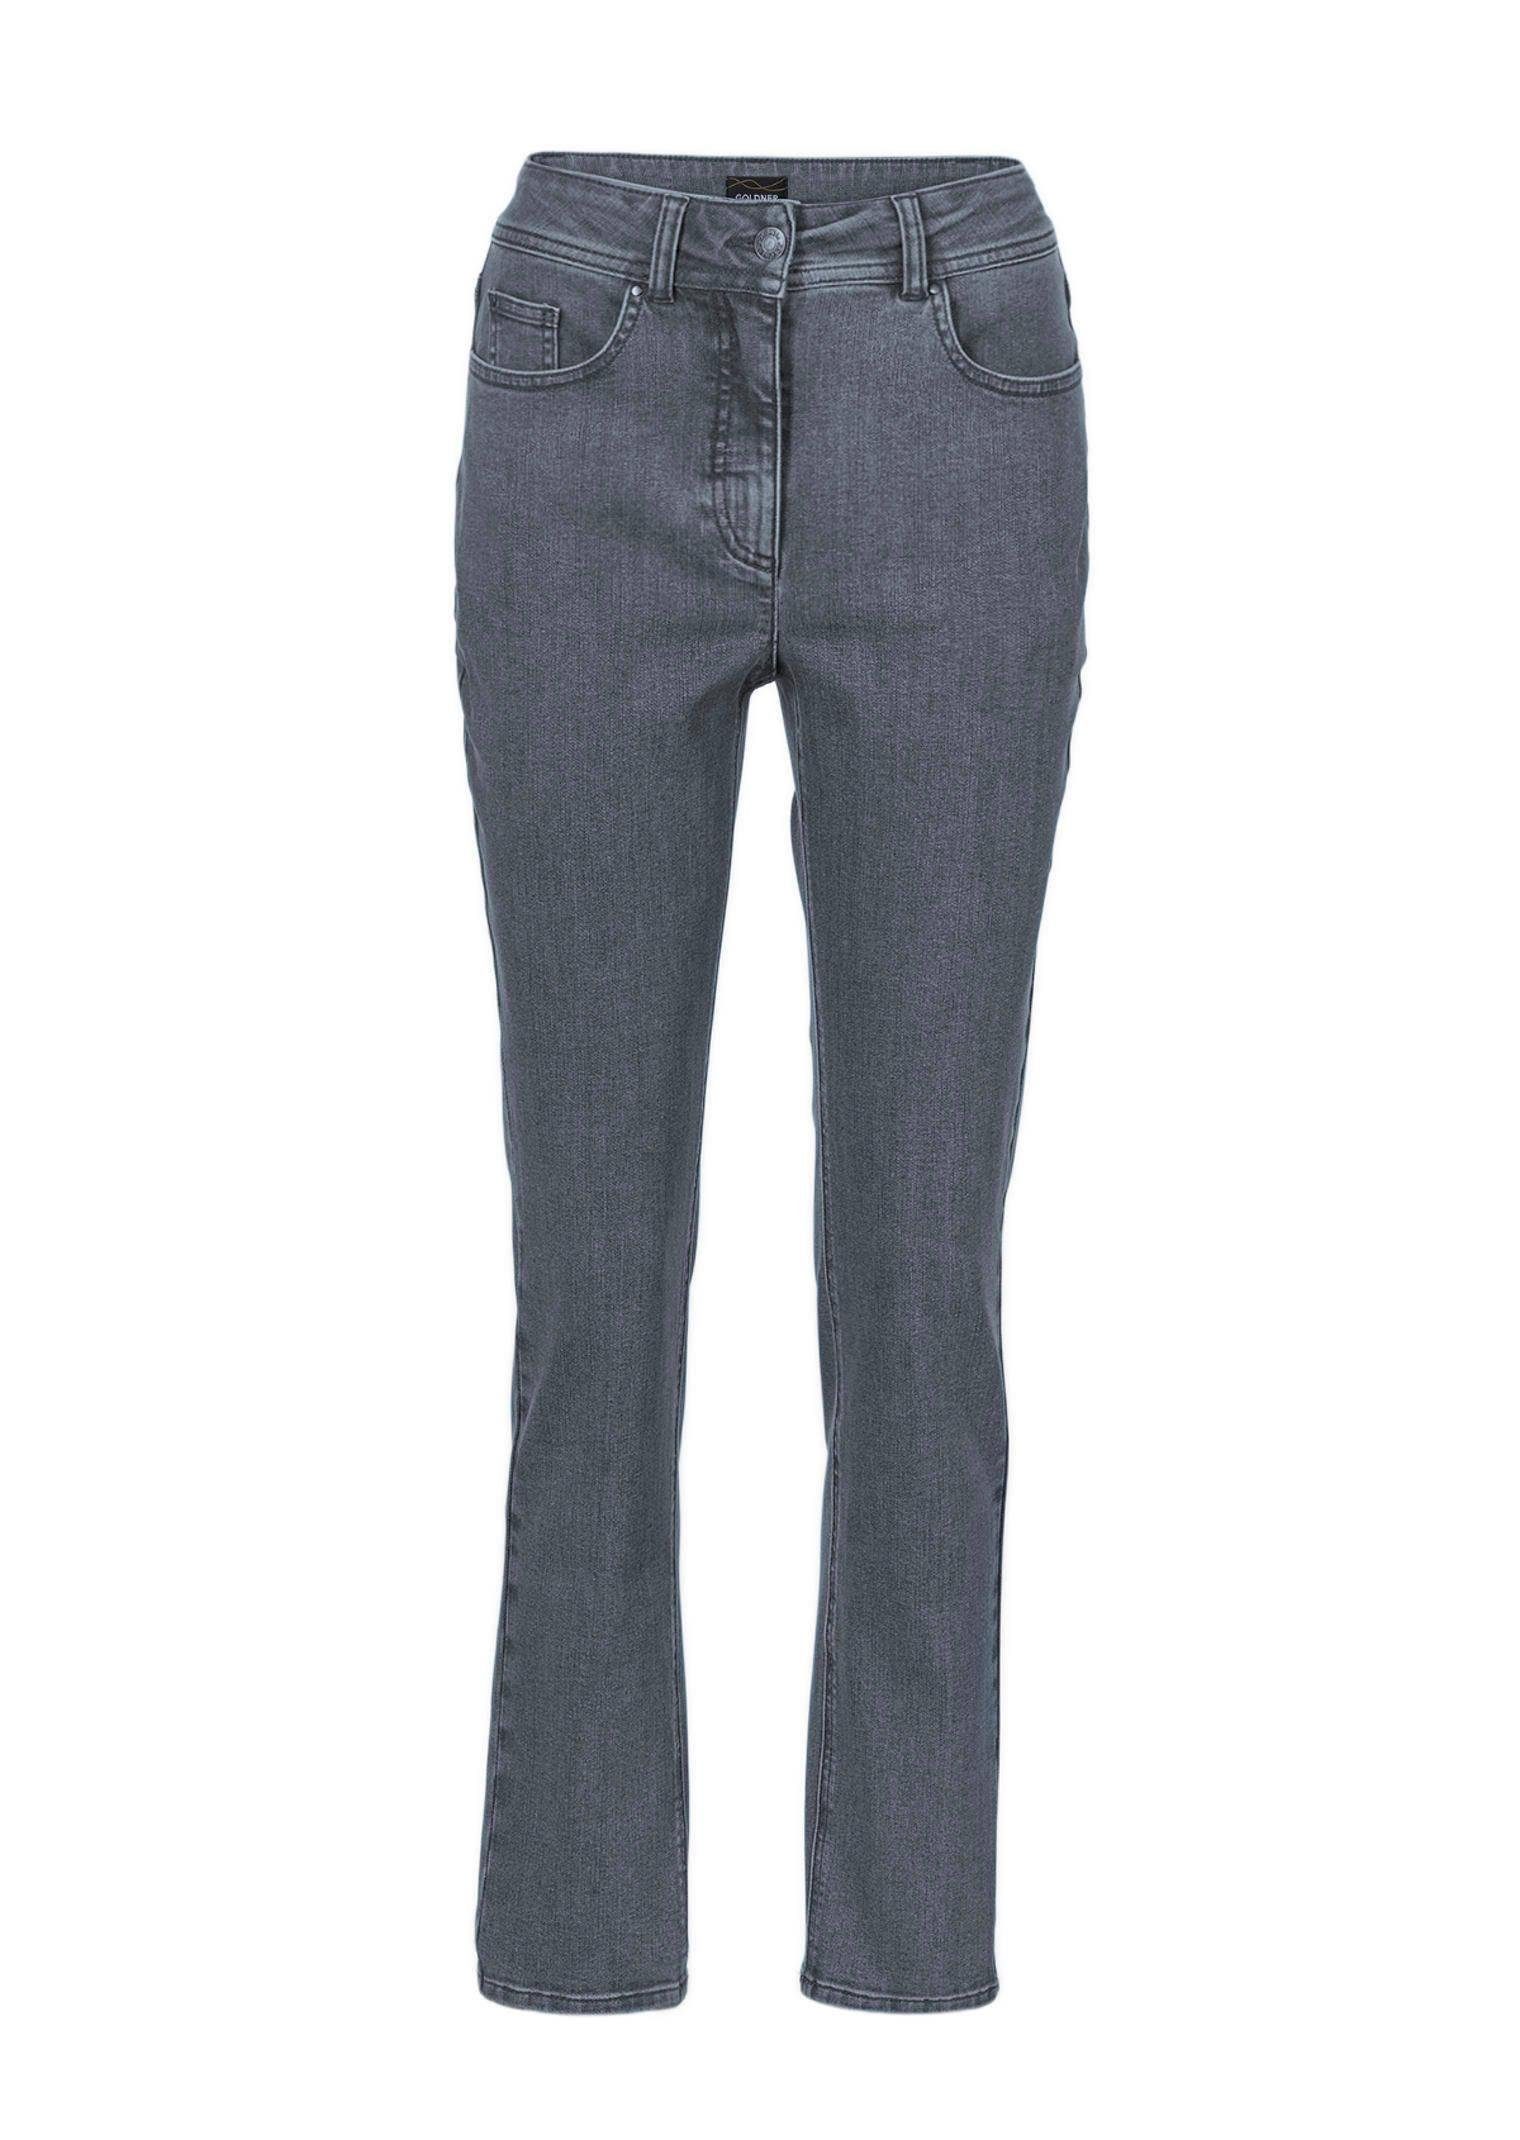 GOLDNER Bequeme Jeans Kurzgröße: Superbequeme Hose mit Bauchweg-Effekt grau